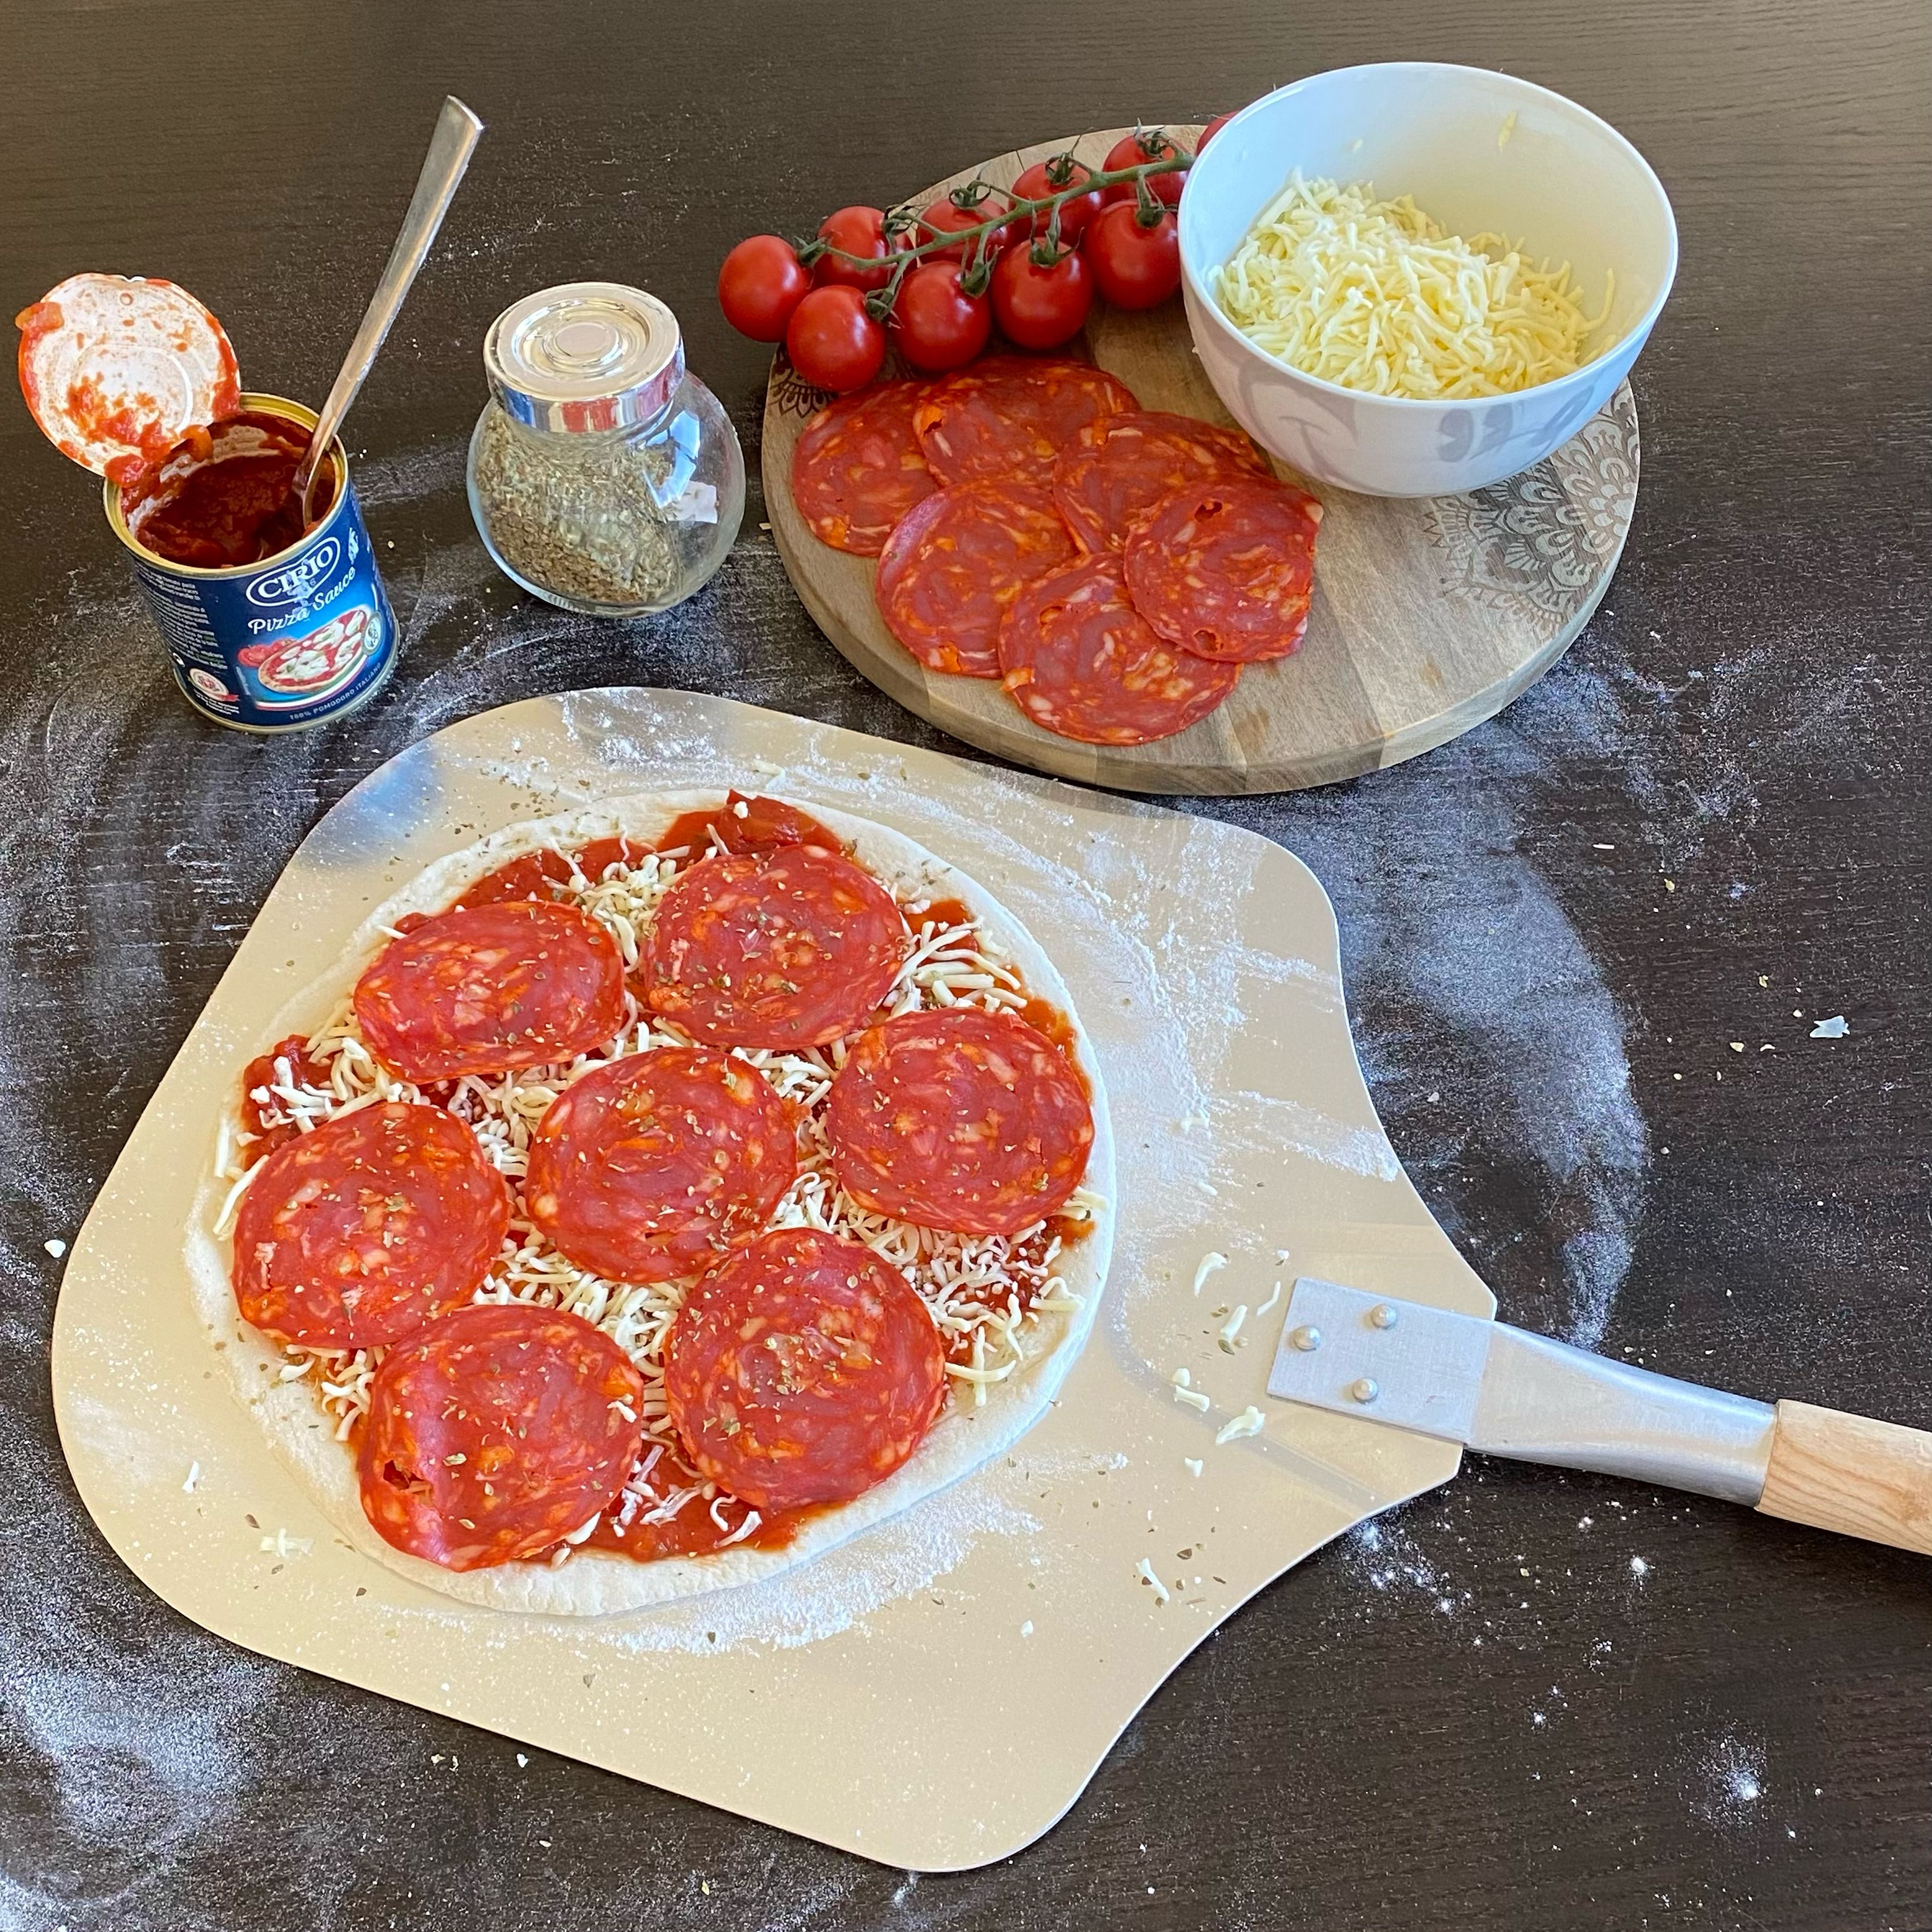 Tipp: Die Pizza bereits vor dem Belegen auf die Pizzaschaufel legen um sie später einfacher in den Ofen zu bekommen! 

Pro Pizza 2-3 EL (je nach Größe des Pizzabodens) Tomatensoße gleichmäßig auf dem Pizzaboden verteilen, mit Basilikum und 1/3 Beutel Pizzakäse bestreuen und mit Salami belegen.